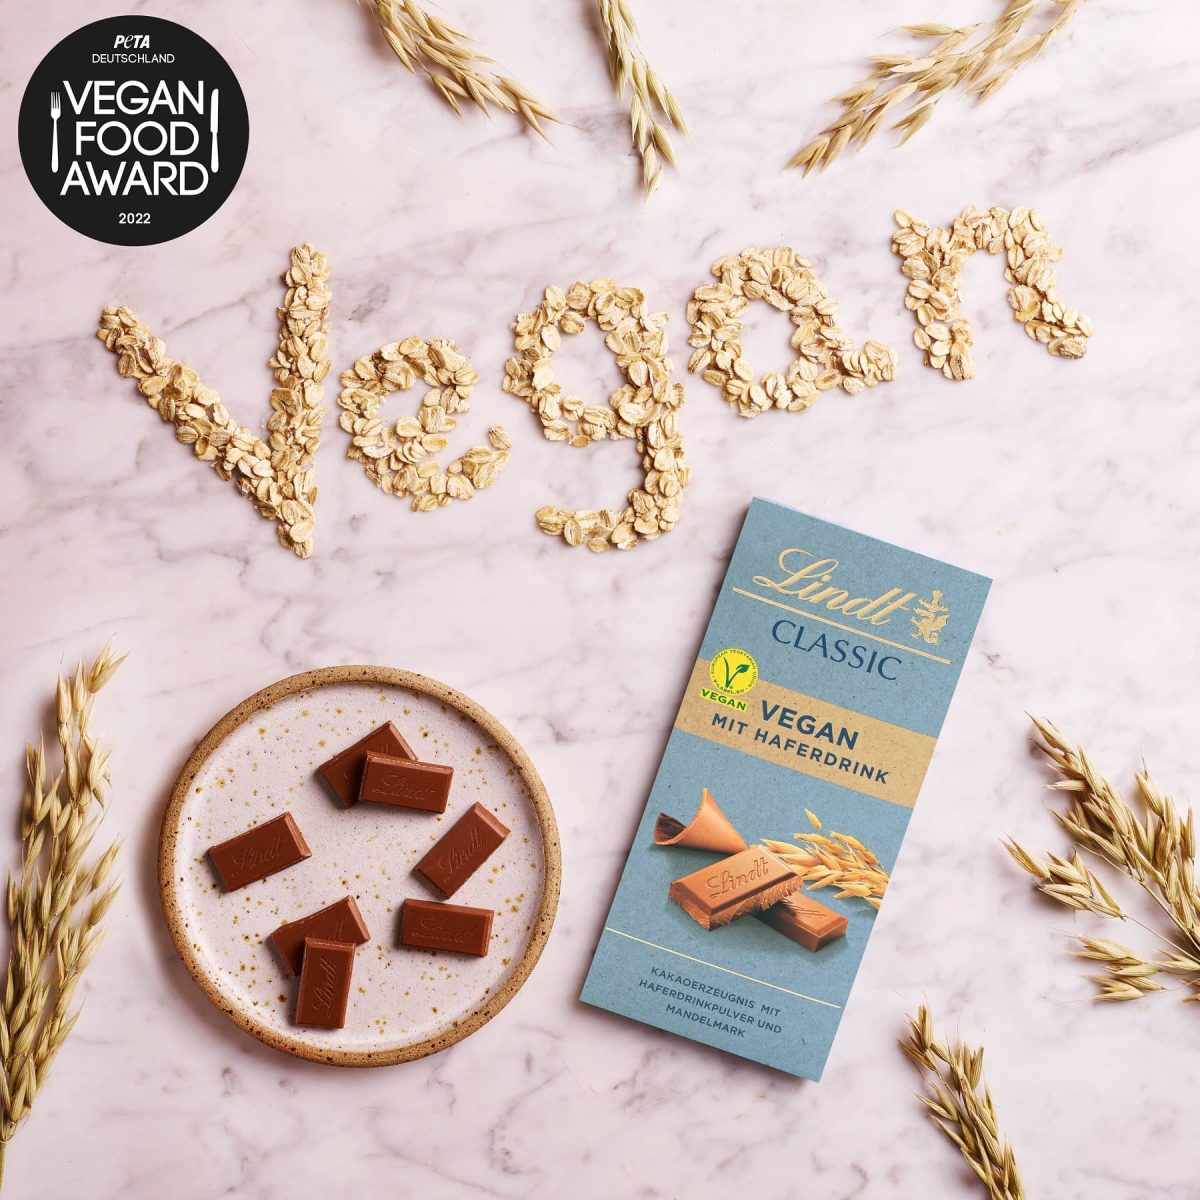 Die Lindt Vegan Classic Schokolade, die den Vegan Food Award von PETA gewonnen hat, in der Draufsicht, daneben das Wort "Vegan" mit Haferflocken gelegt, mit Logo.